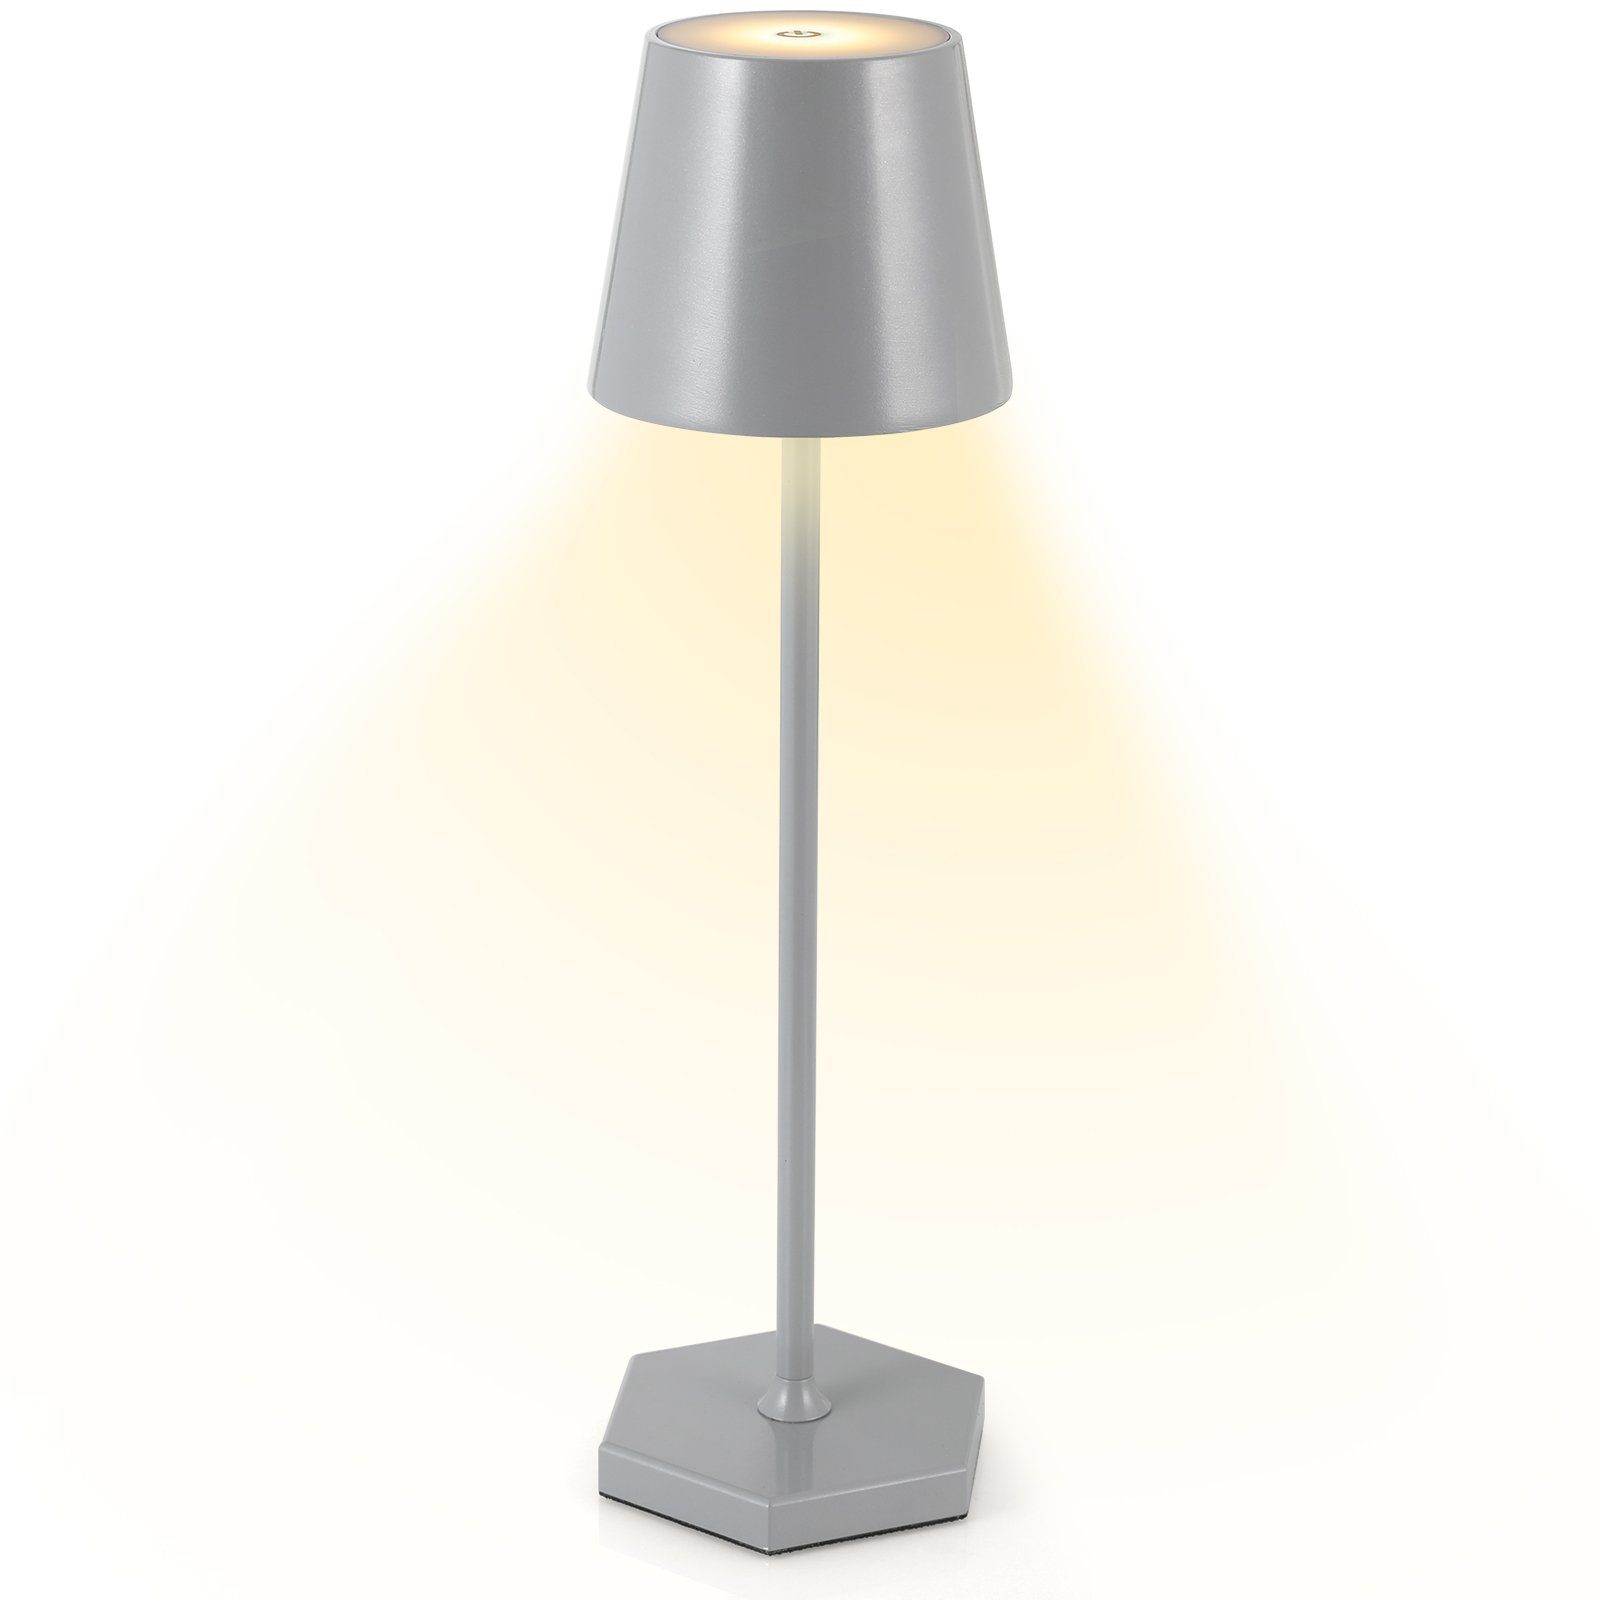 TLGREEN Schreibtischlampe Tischlampe Kabellos,LED Akku Tischlampe Dimmbare,Nachttischlampe,300LM Grau